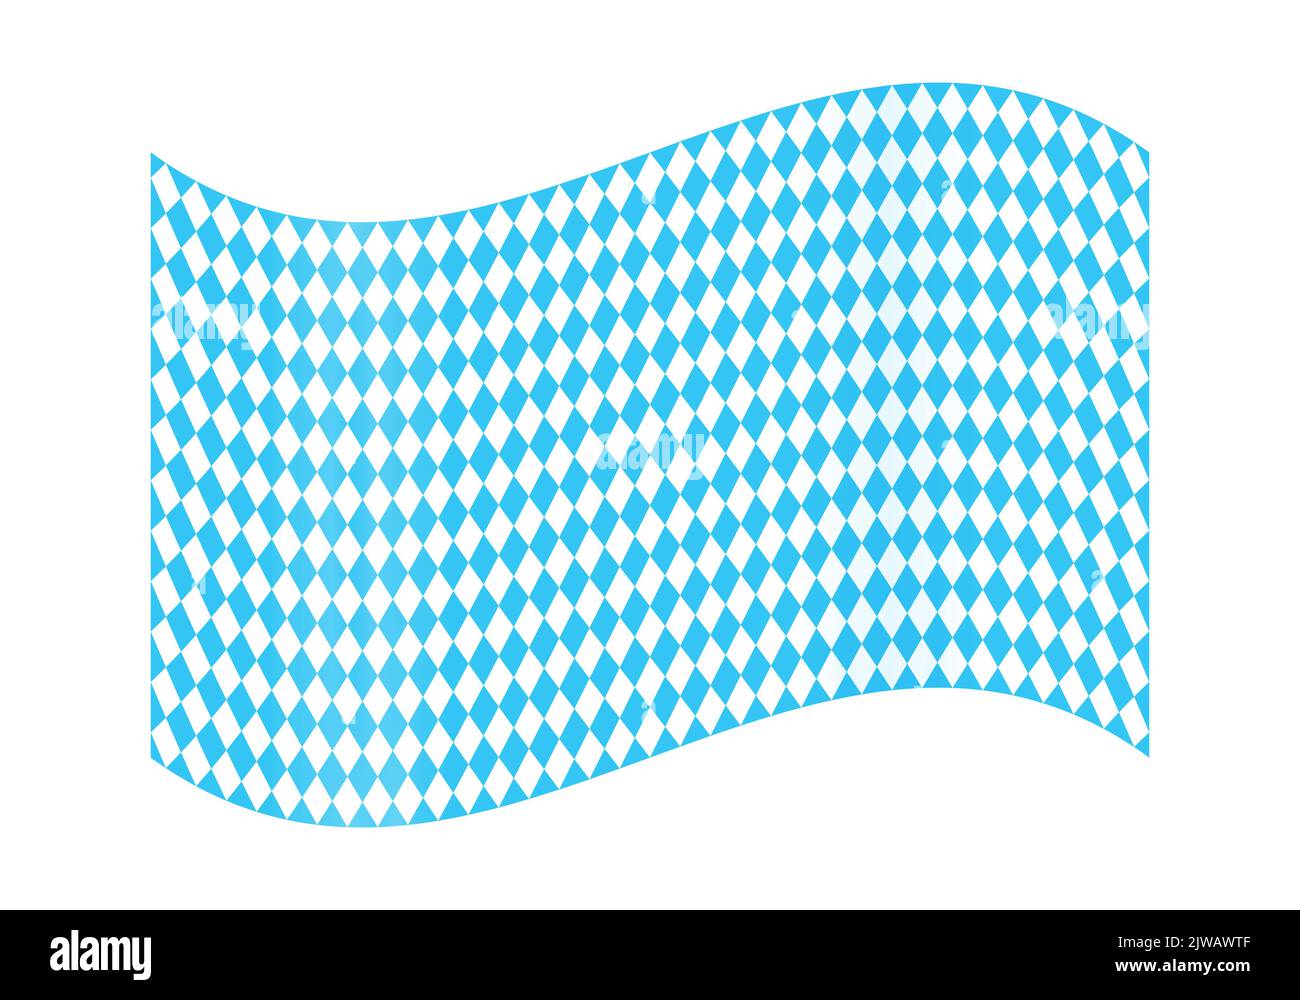 Drapeau de Bavière agité avec lozenges sans couture. Fête de la bière Oktoberfest avec rhombus bleu et blanc. Couleurs vexillologiques bavaroises traditionnelles. Illustration vectorielle Illustration de Vecteur